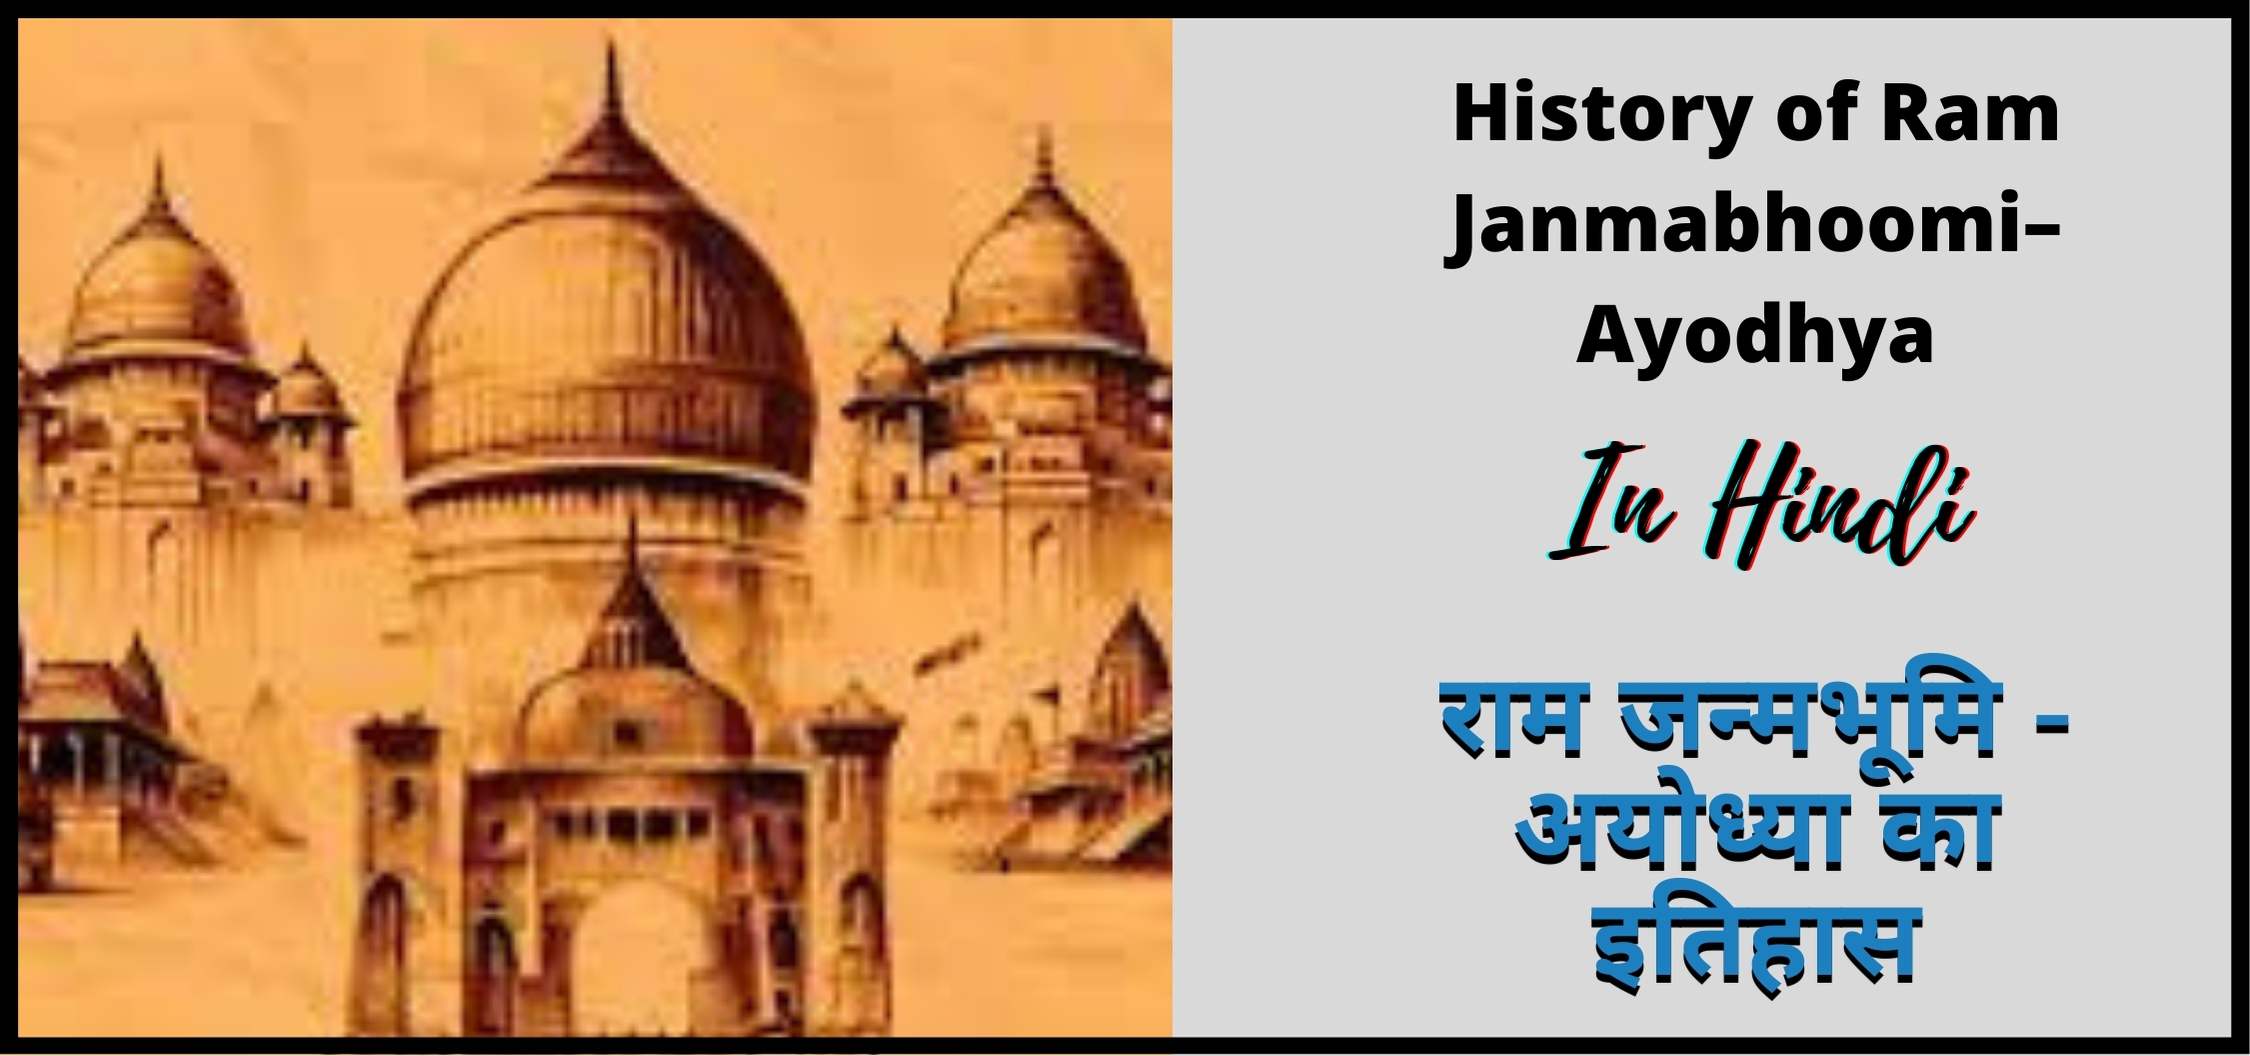 राम जन्मभूमि - अयोध्या का इतिहास | History of Ram Janmabhoomi– Ayodhya